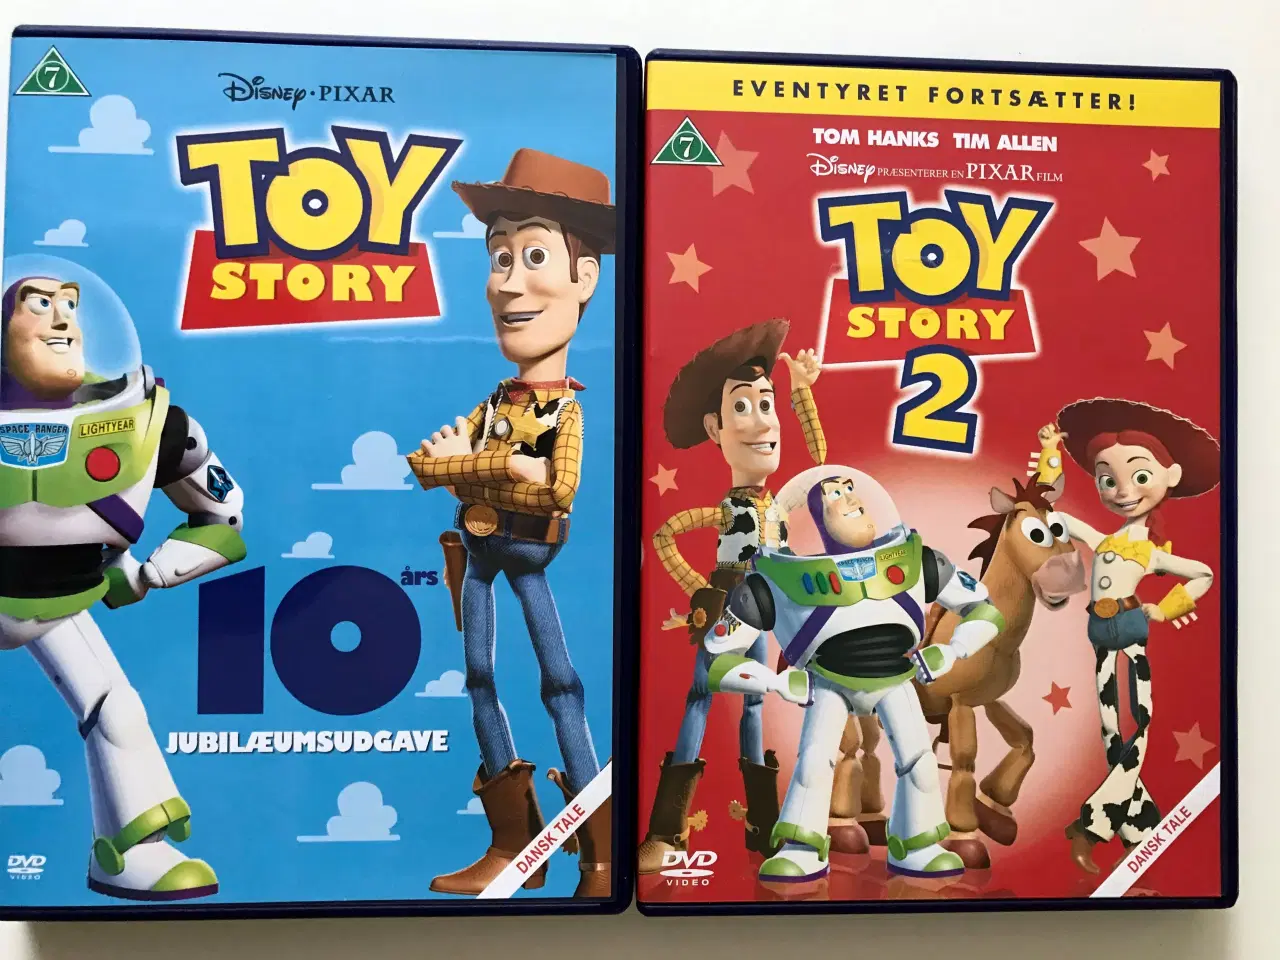 Billede 1 - DVD: Toy Story 1 og 2